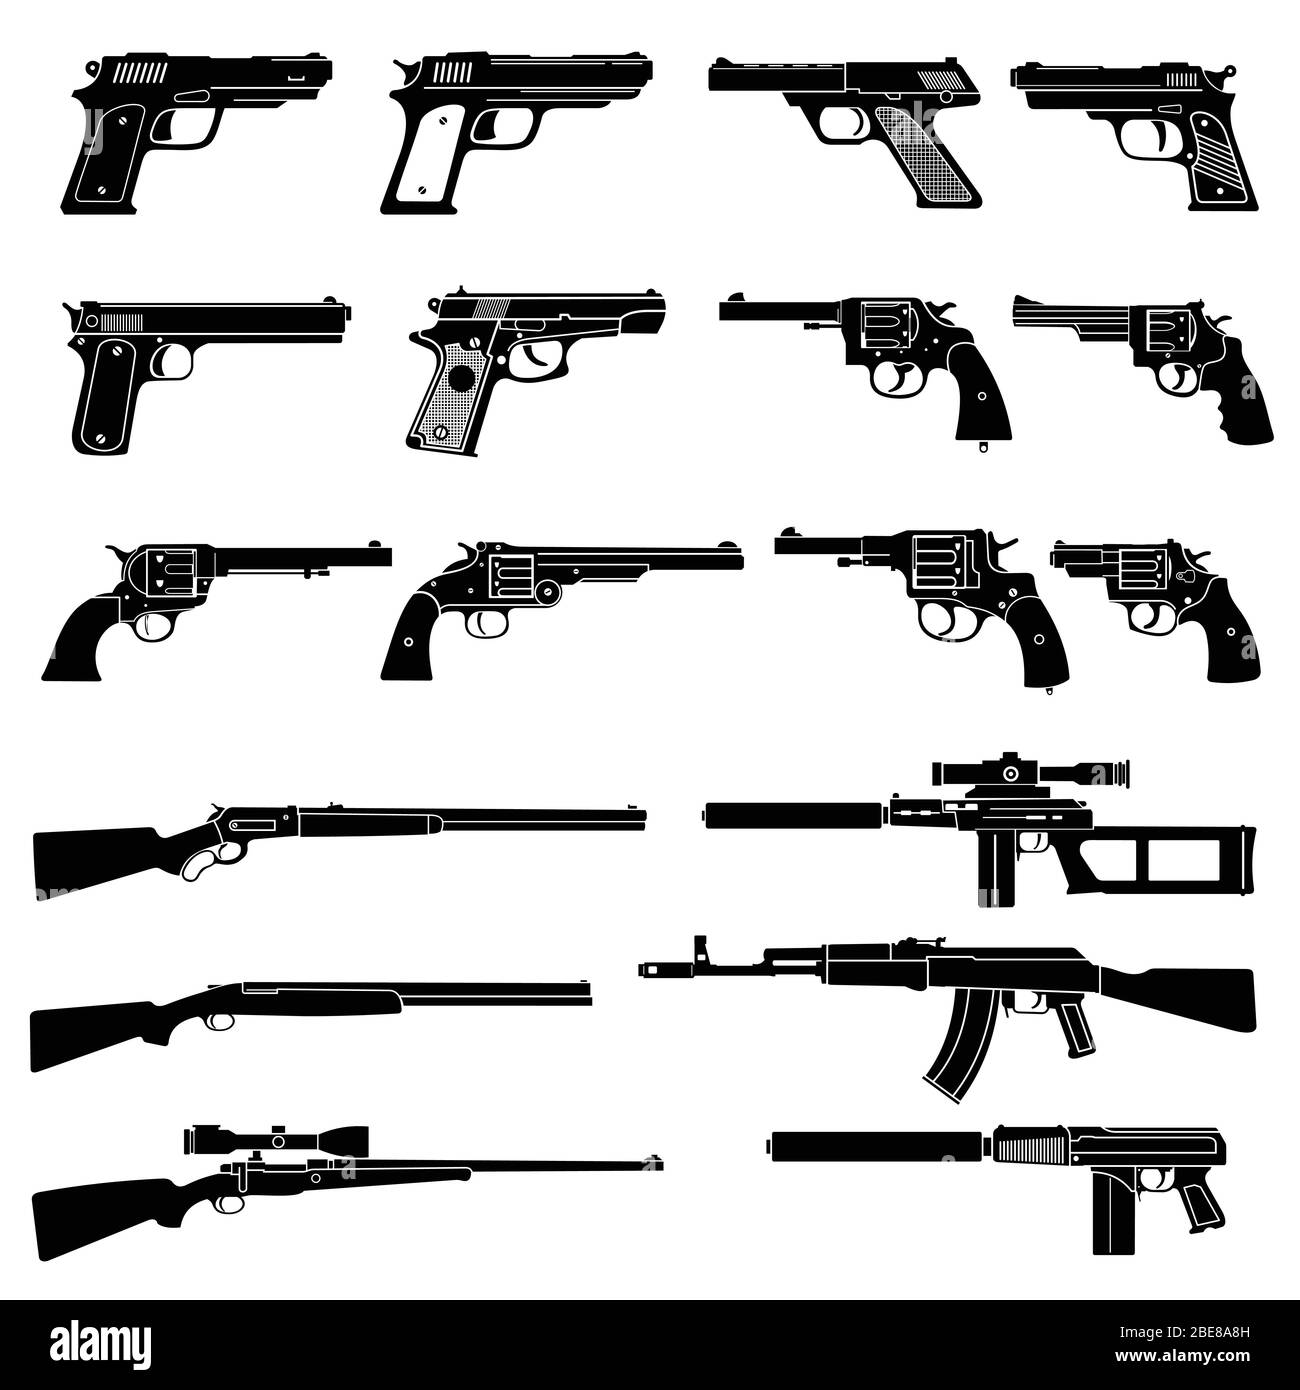 Icone vettoriali per armi automatiche e pistole. Pittogrammi militari di combattimento sulle armi da fuoco. Pistola e arma automatica, fucile e arma da fuoco, illustrazione vettoriale Illustrazione Vettoriale